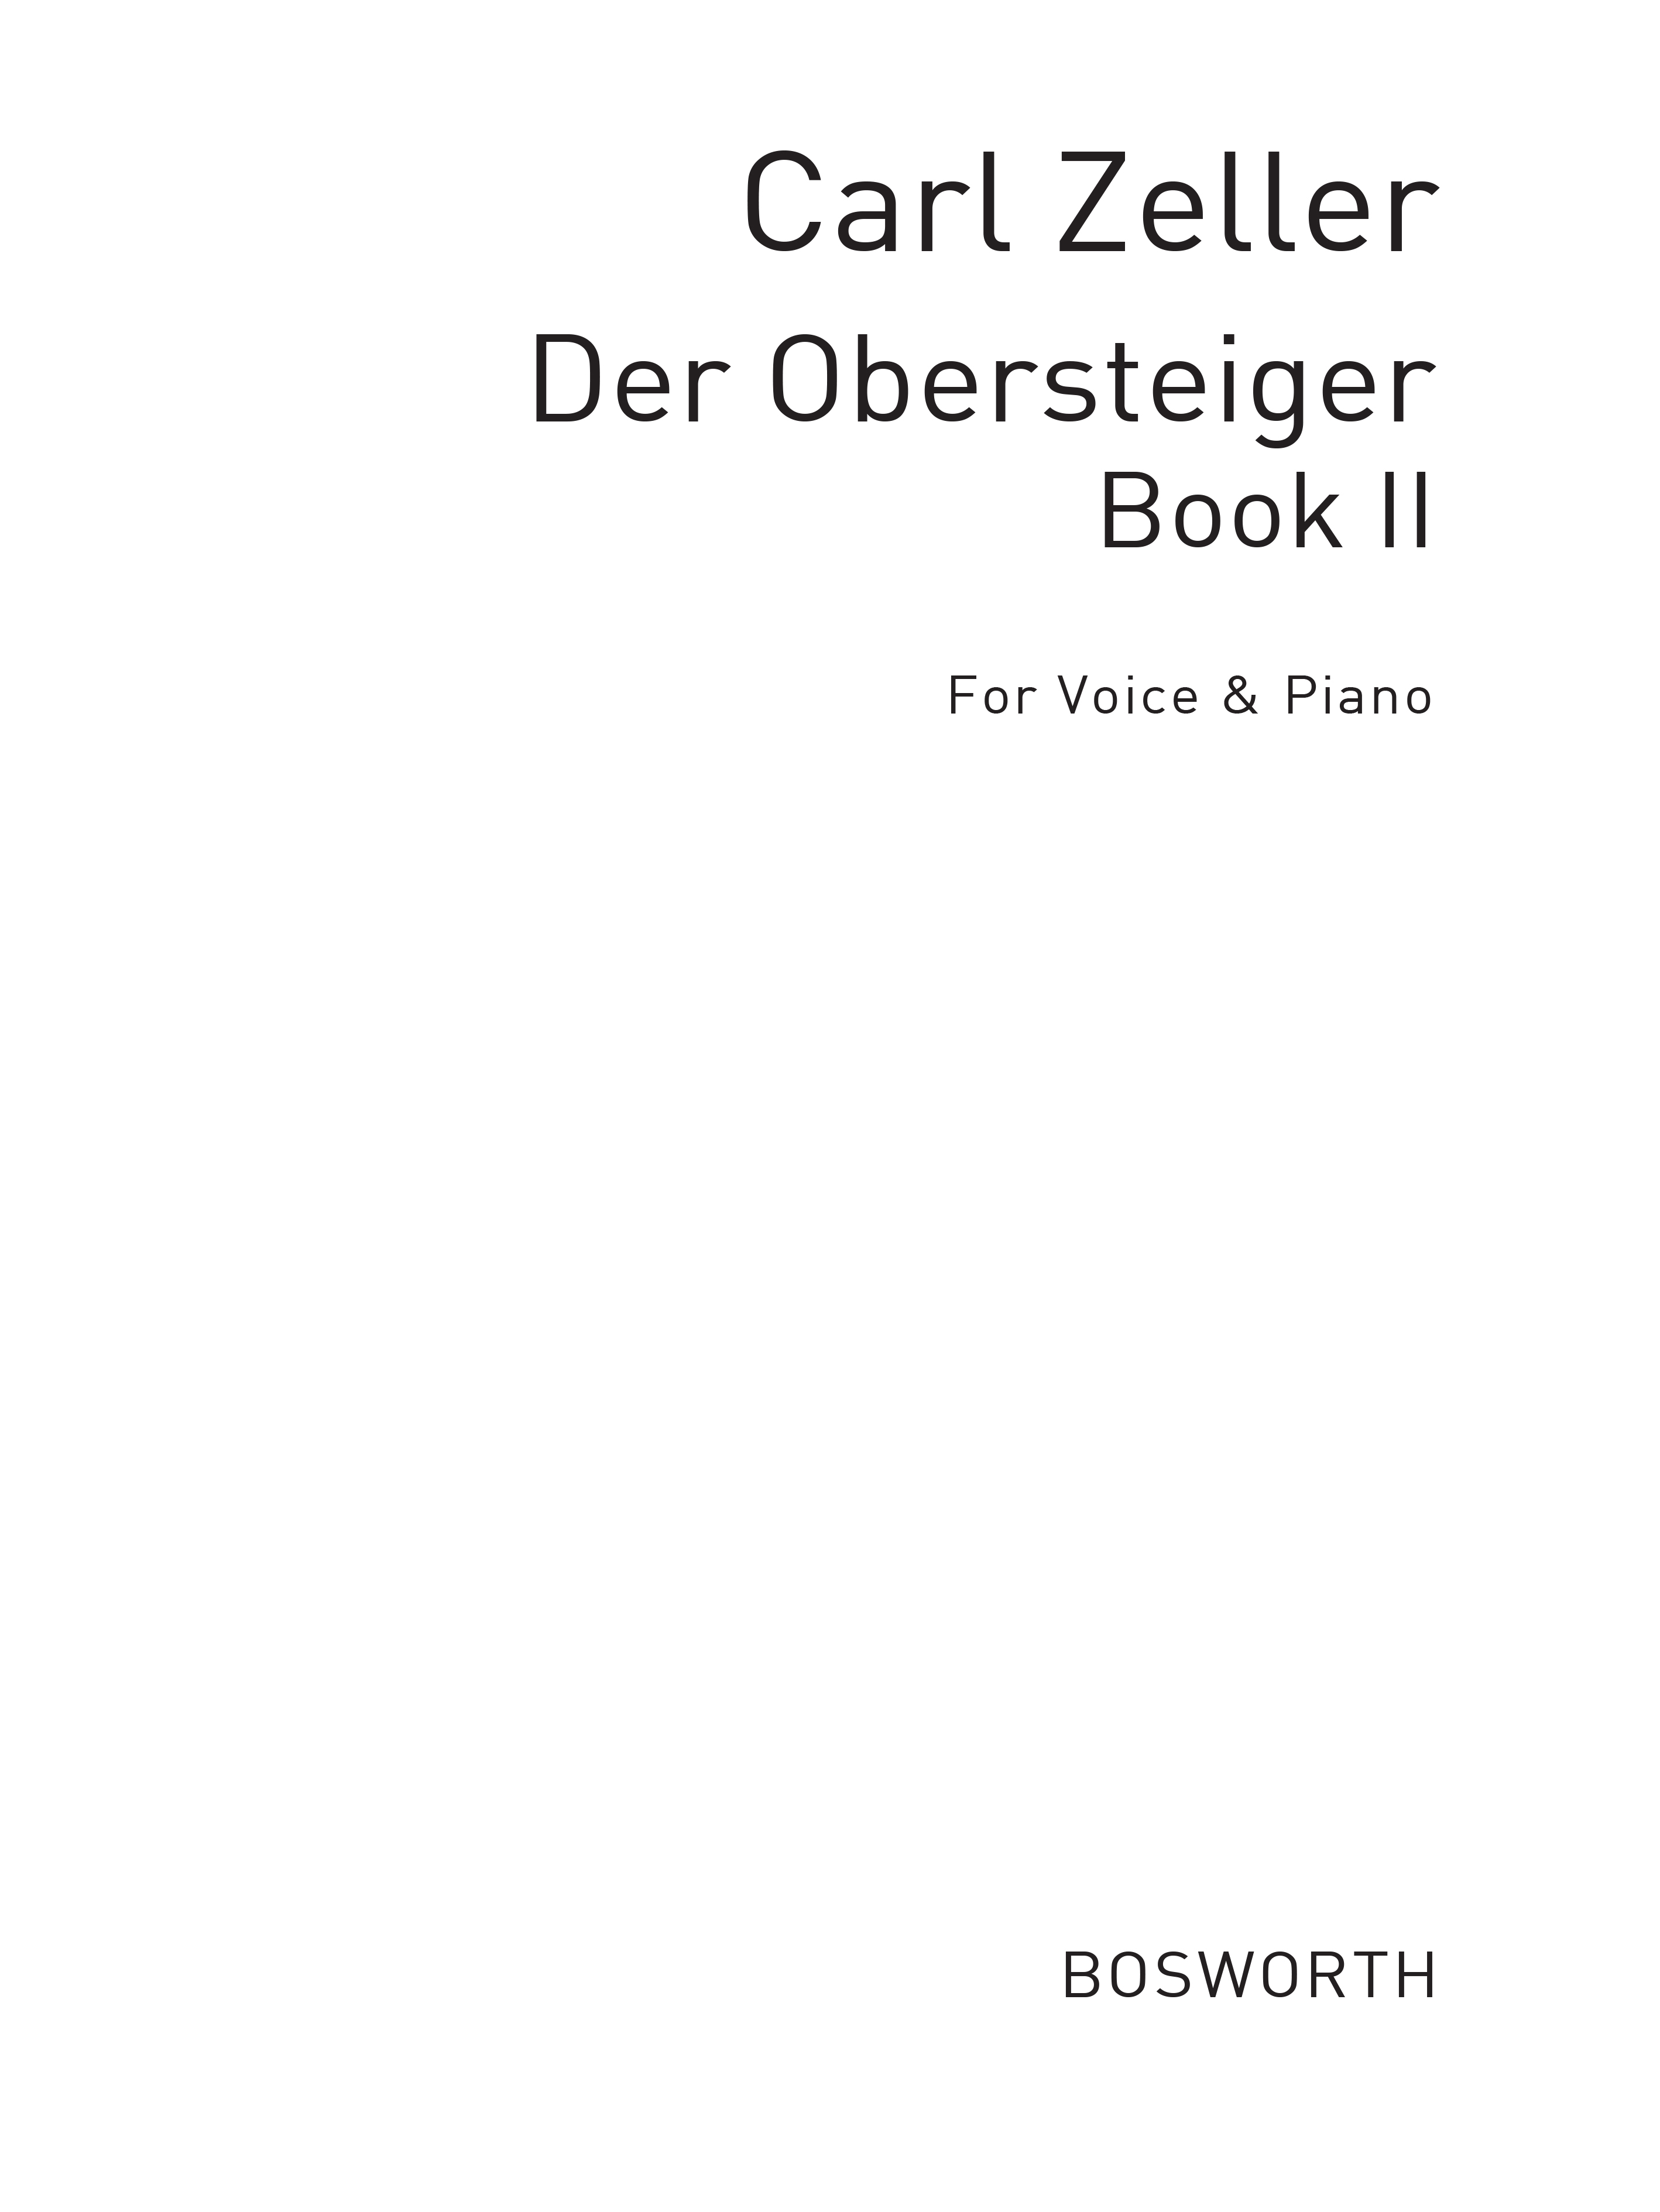 Zeller, C Der Obersteiger Book 2 (German Lyrics) Vce/Pf